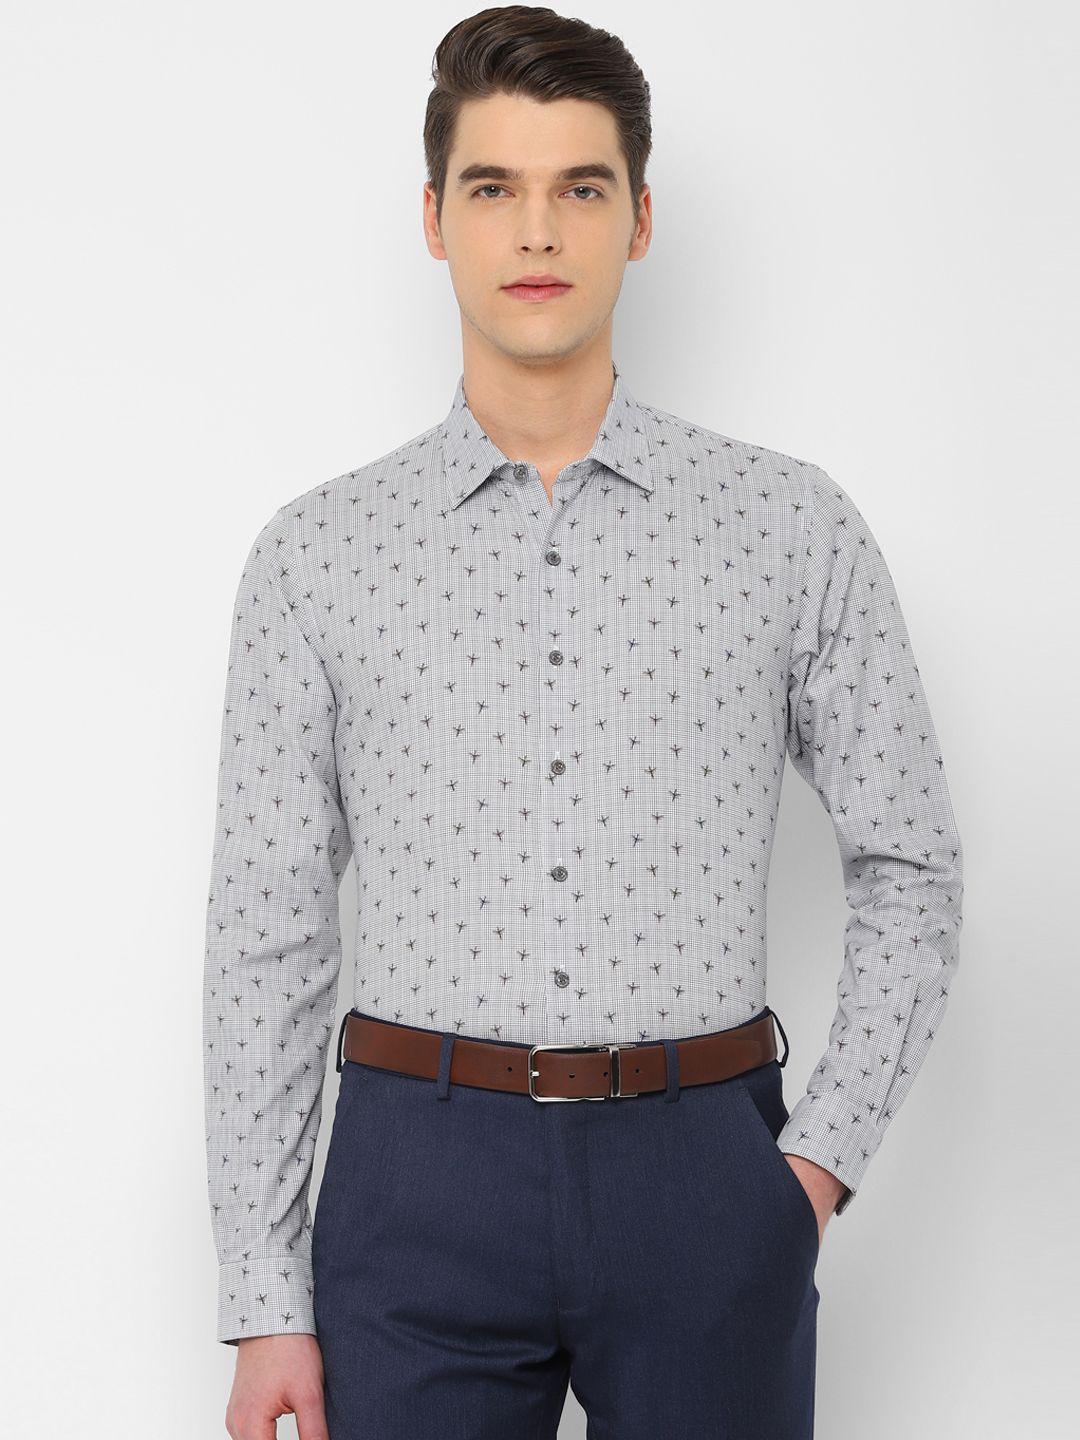 simon-carter-london-men-white-&-grey-regular-fit-printed-formal-shirt